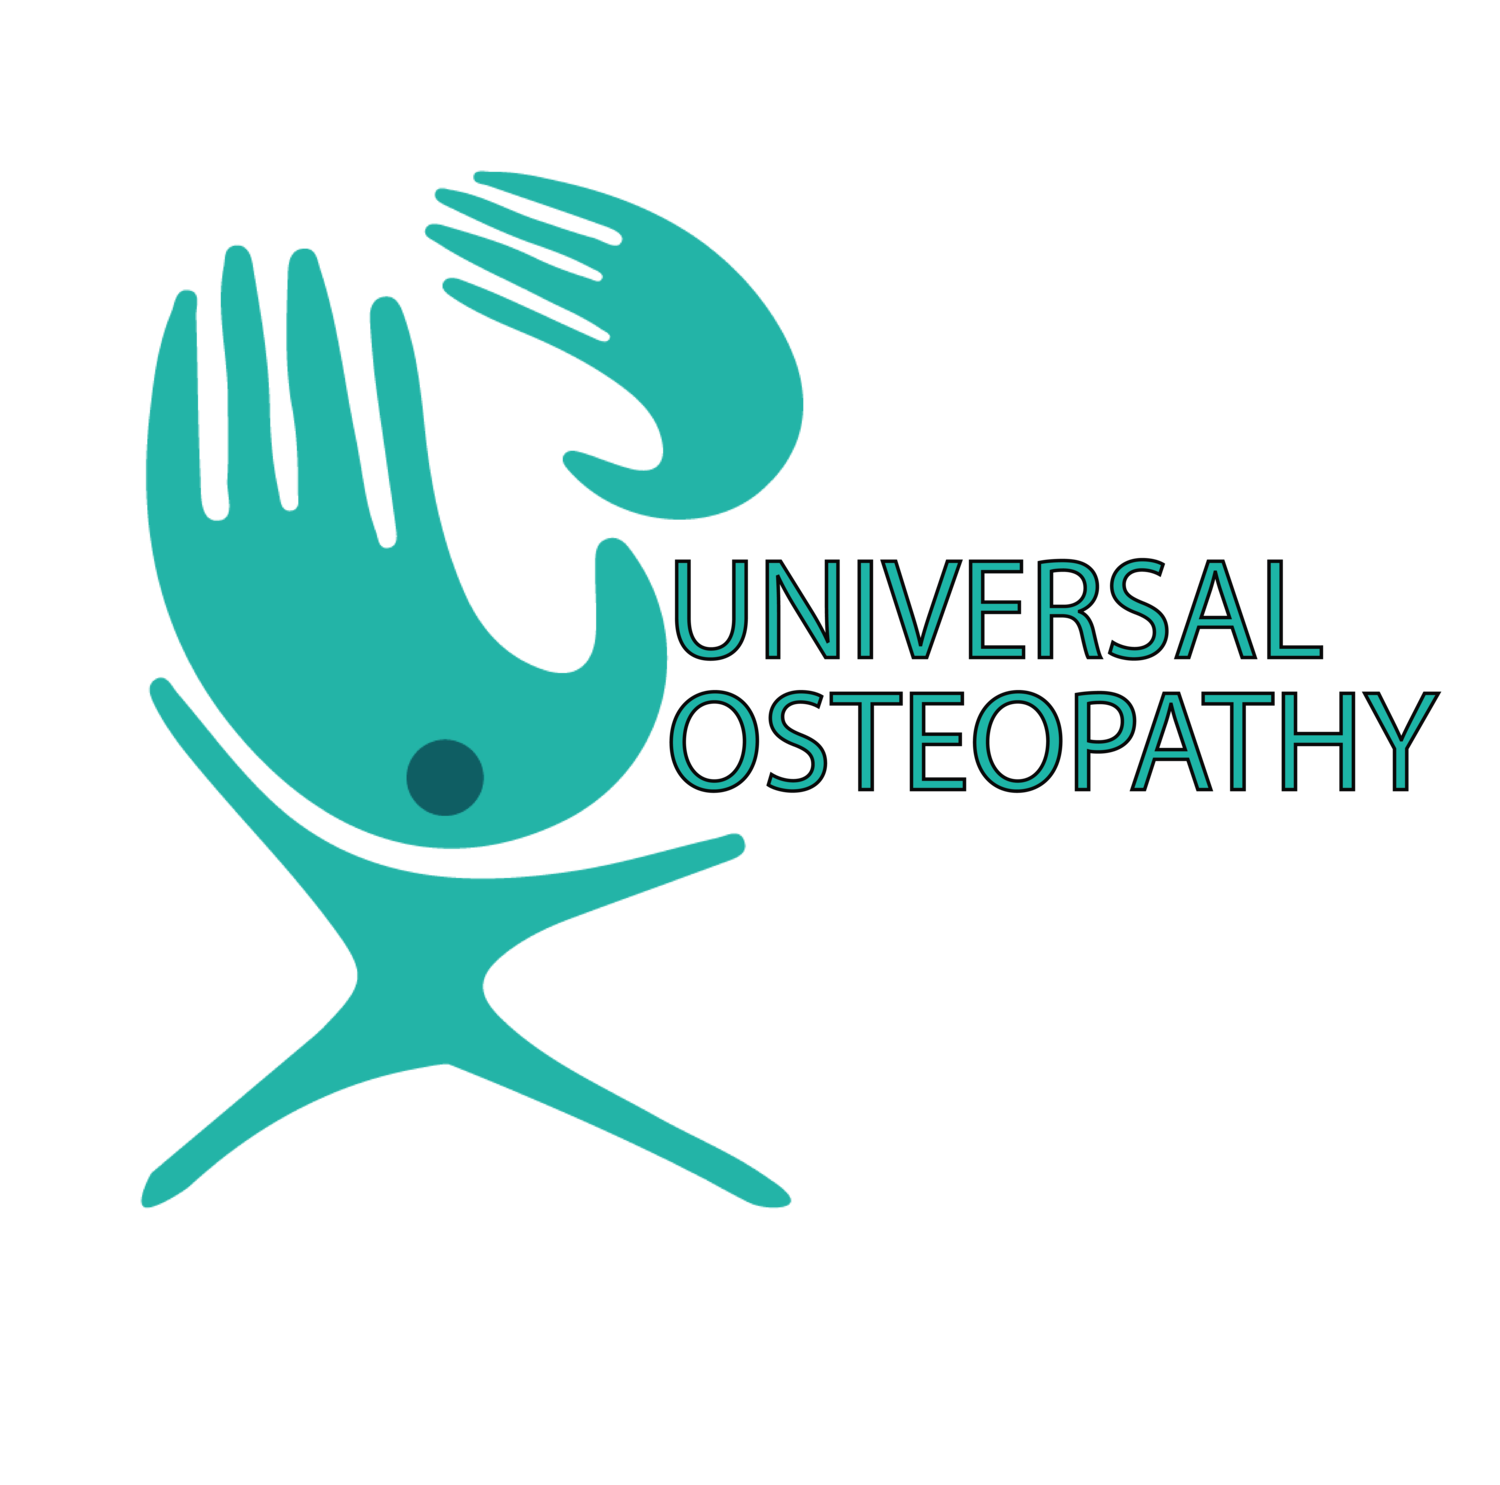 Universal Osteopathy